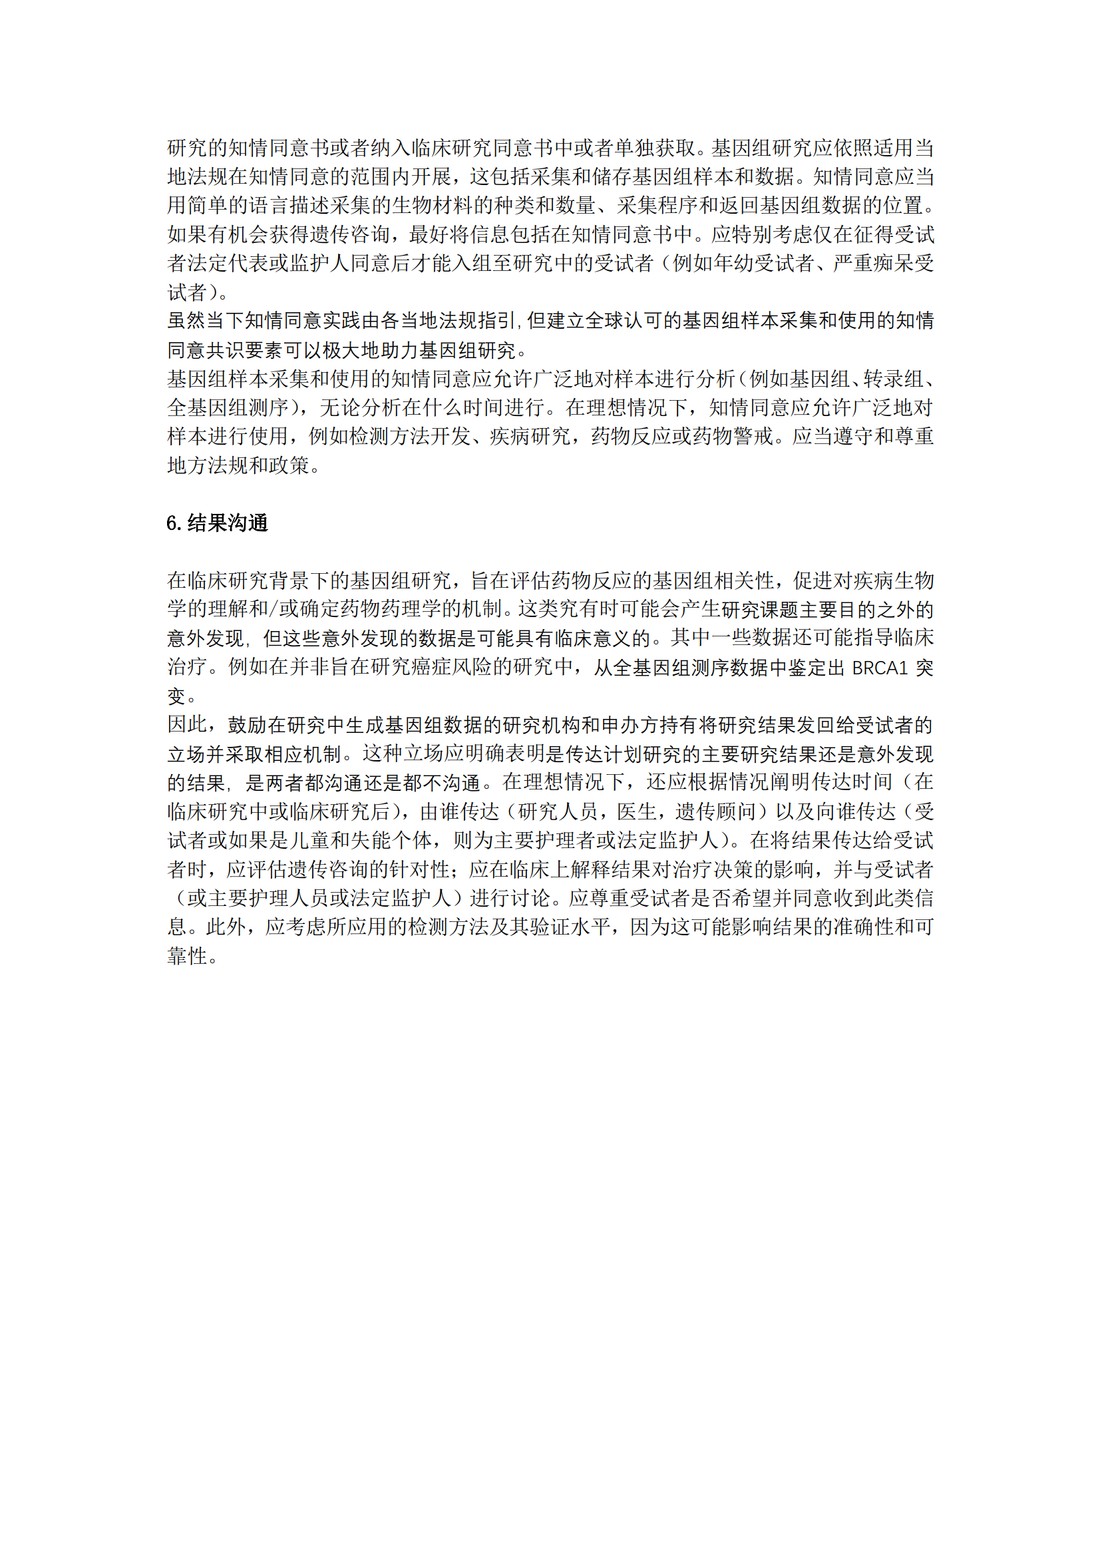 E18：基因组采样和基因组数据管理指导原则（中文翻译公开征求意见稿）_10.jpg